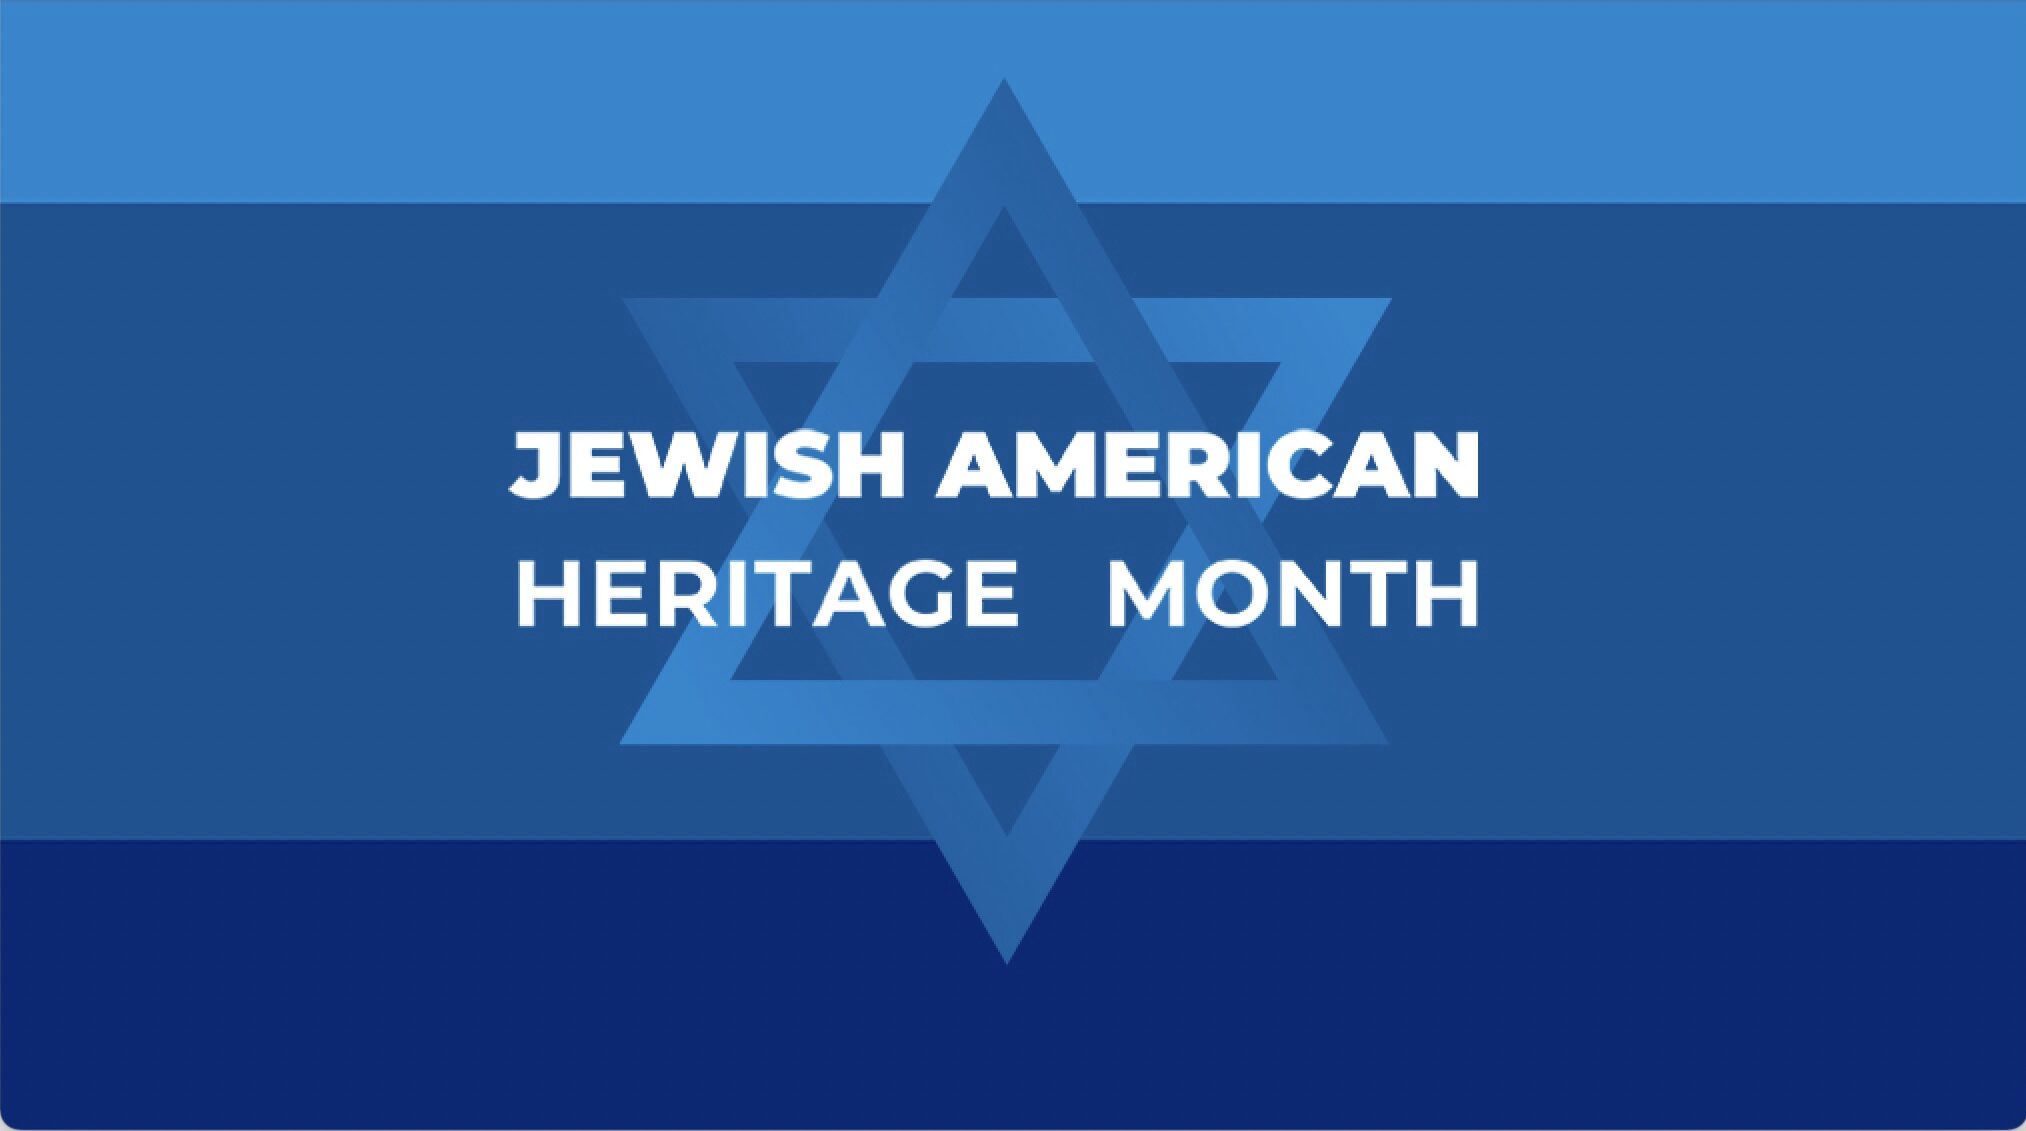 اے پی ایس: ڈبلیو ایل نے ہماری یہودی امریکی کمیونٹی کا جشن منایا